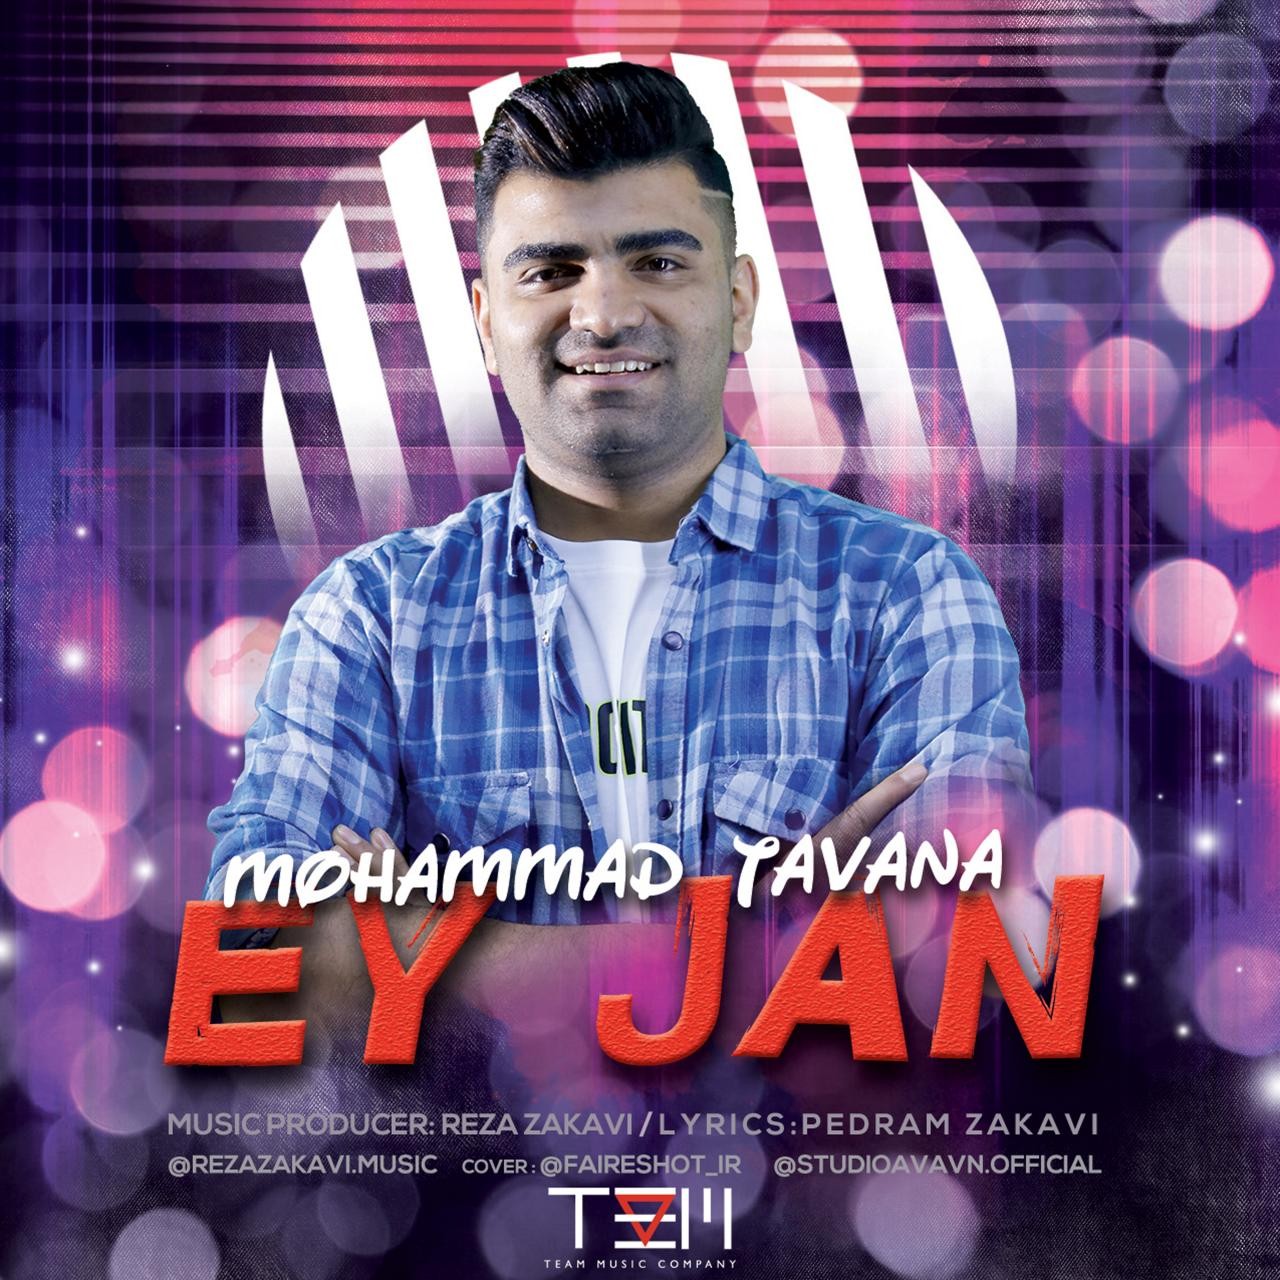 Mohammad Tavana – Ey Jan